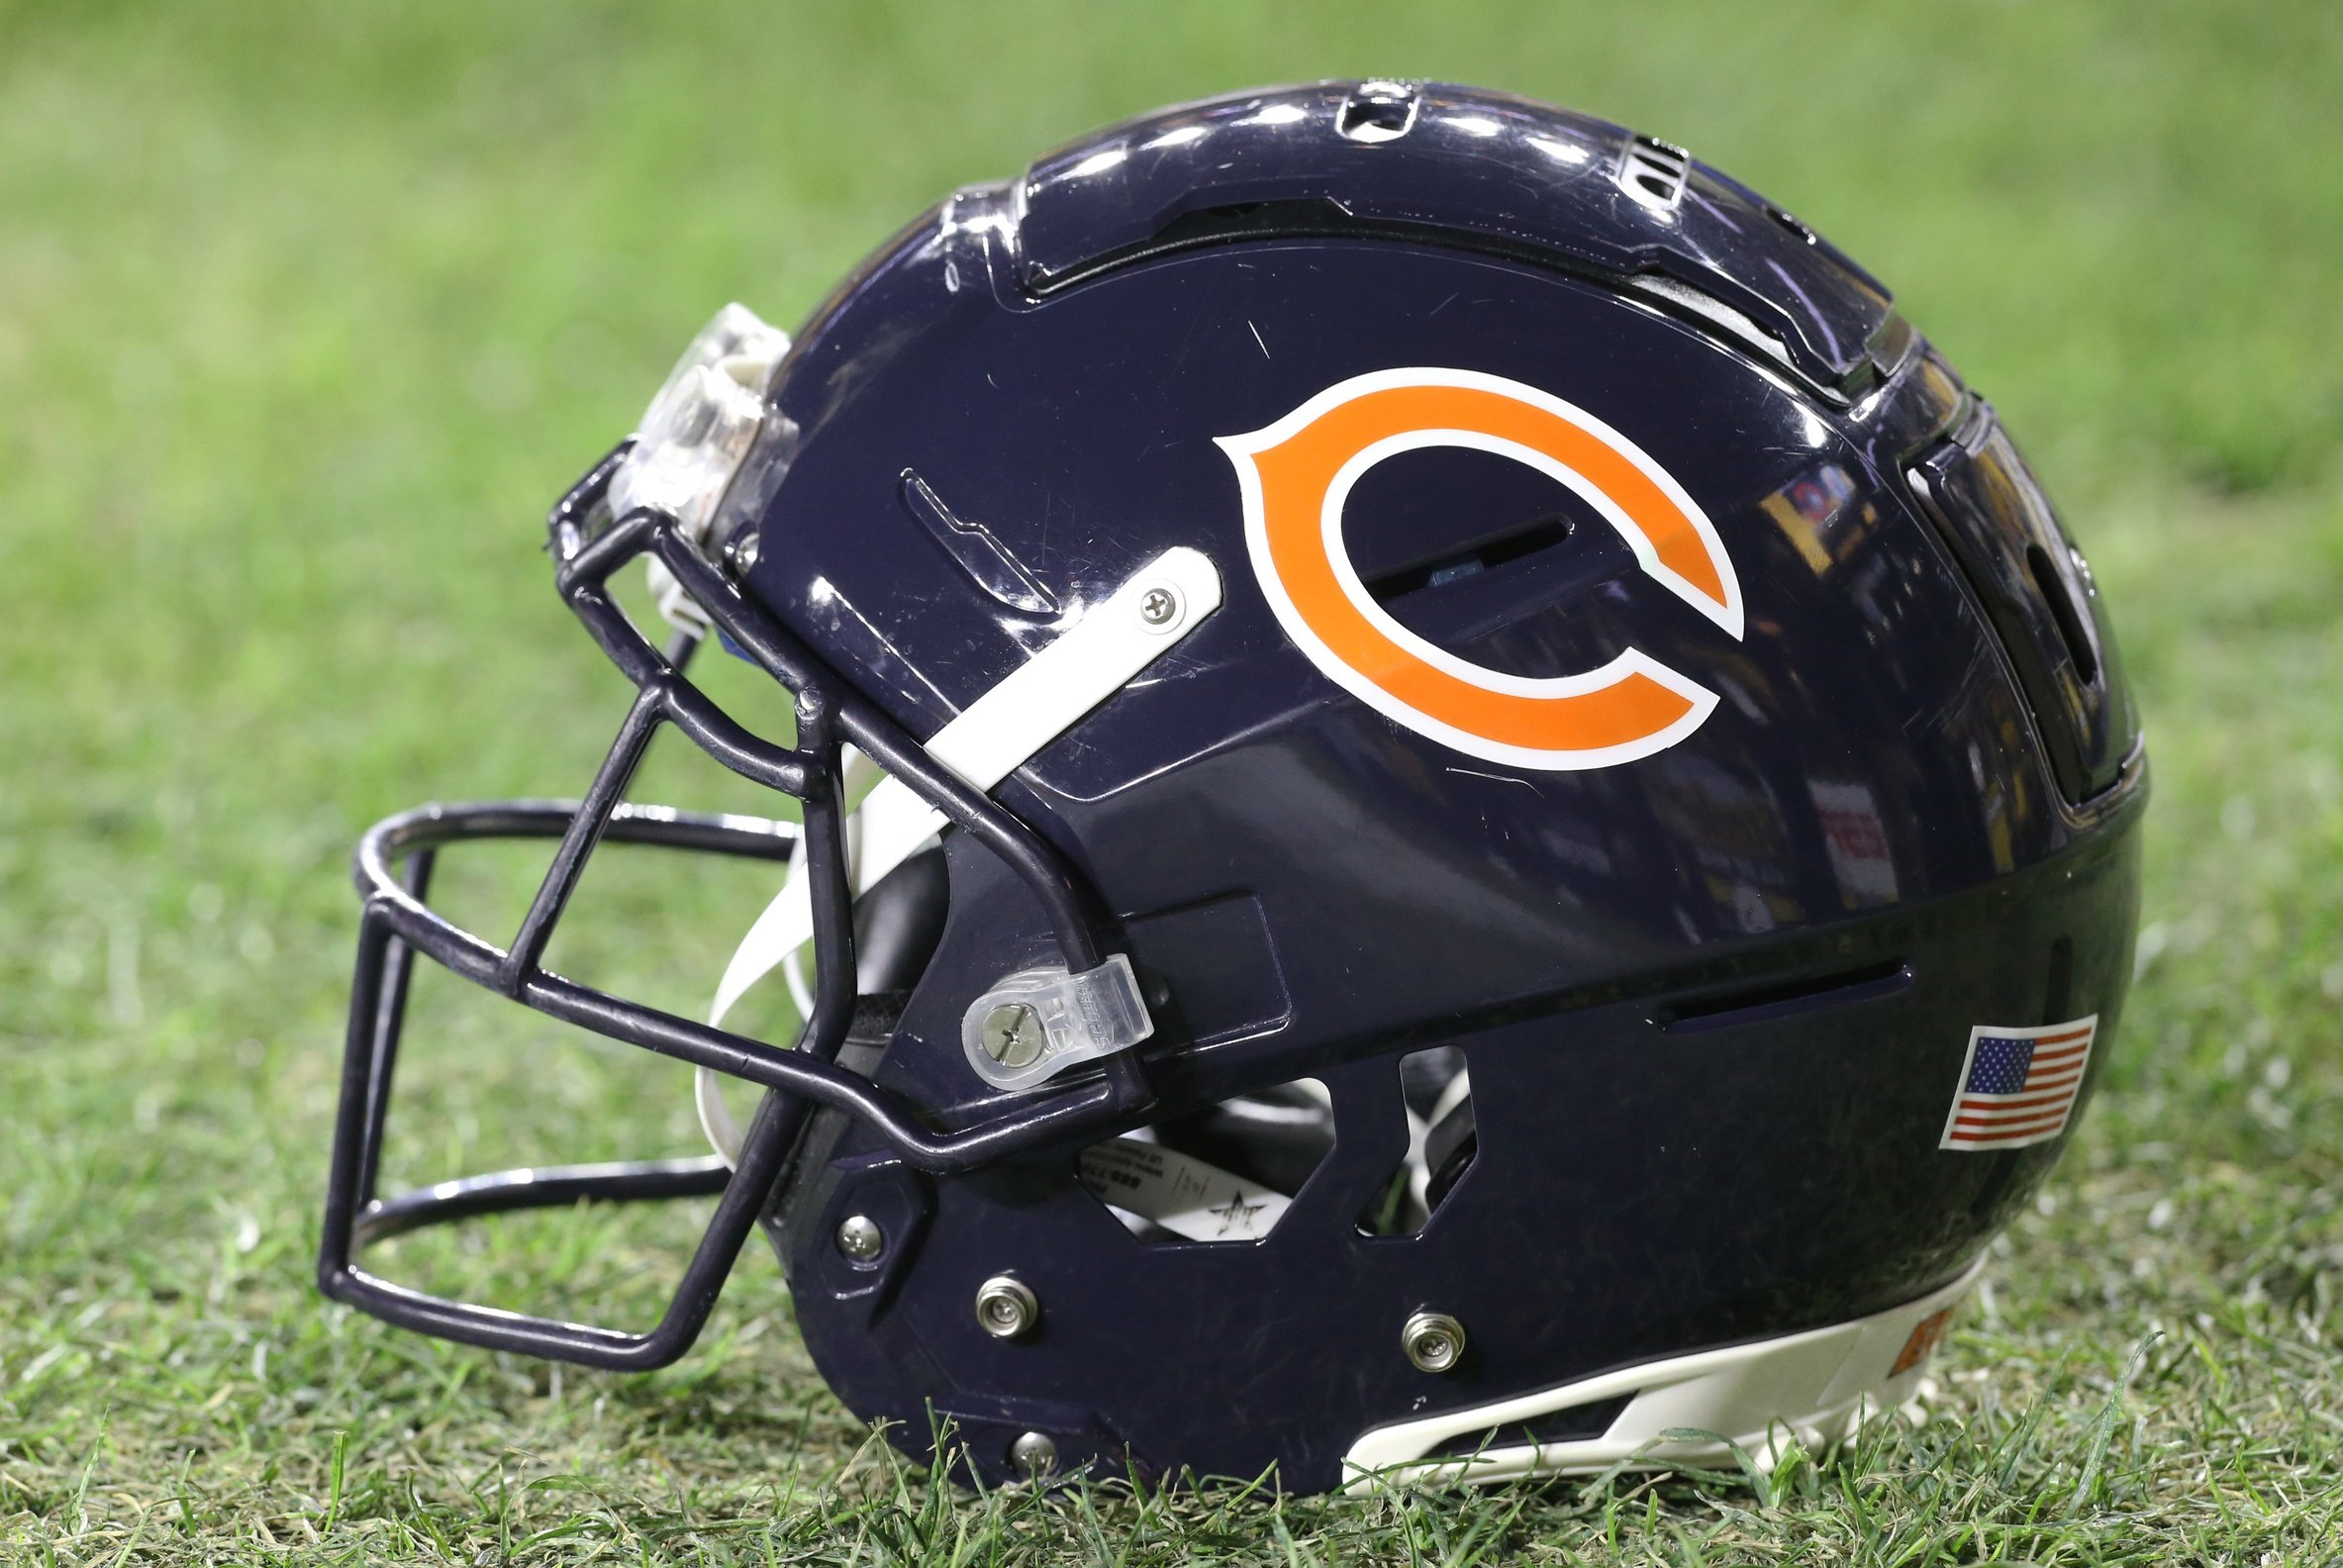 nfl mock draft 2022 chicago bears